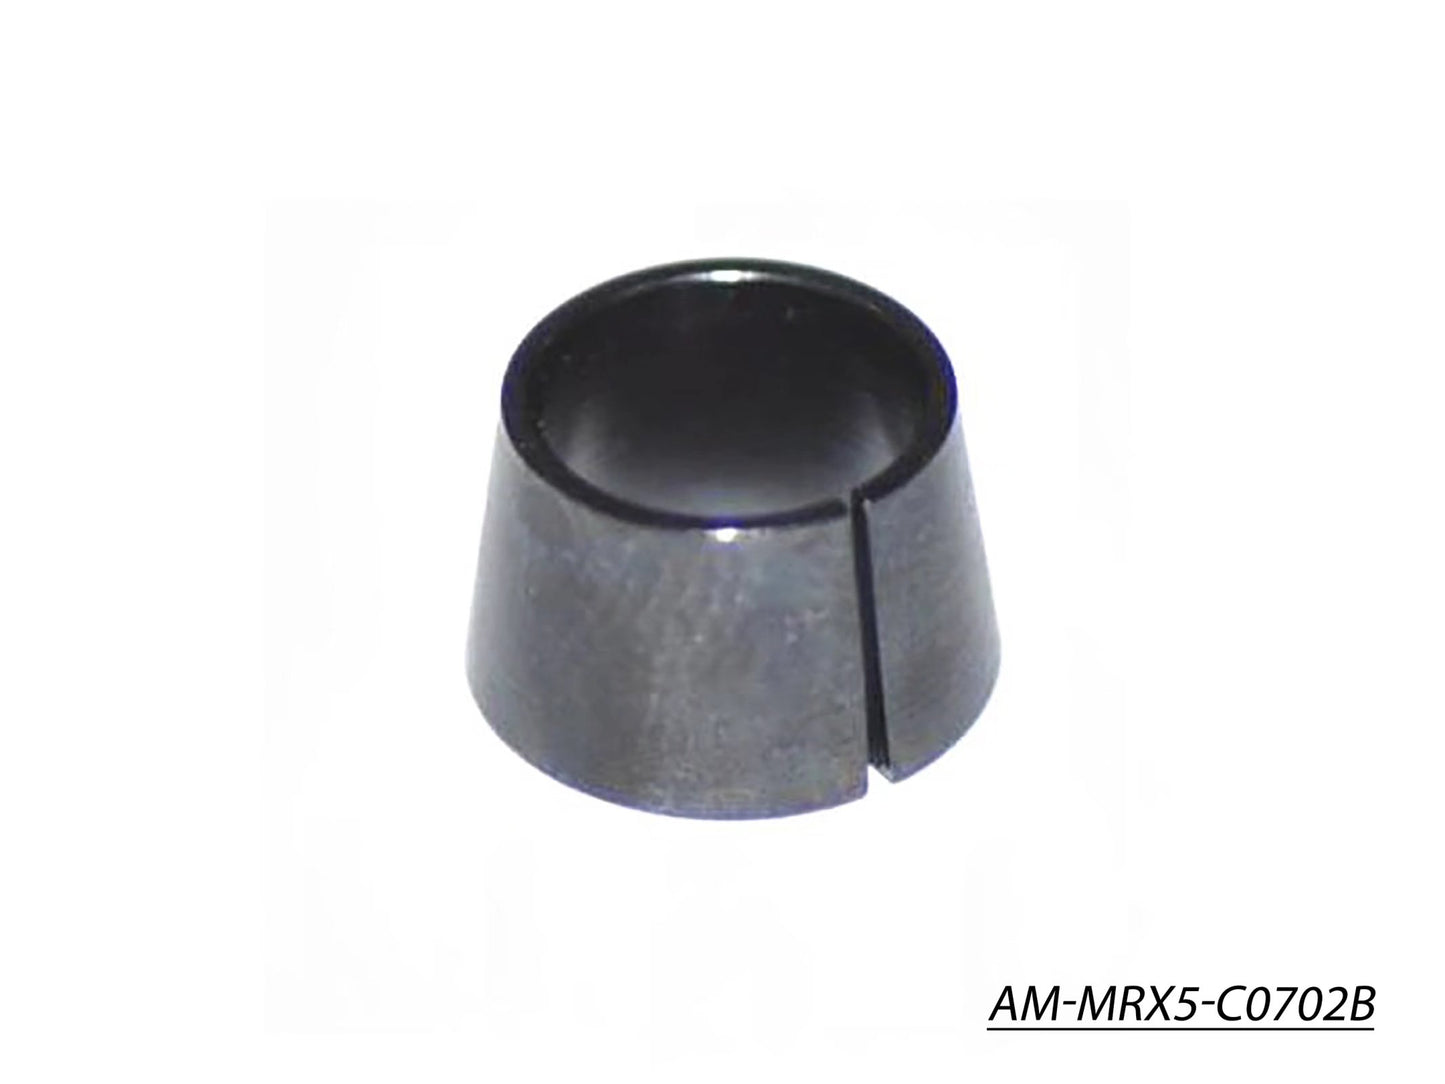 Taper Cone (AM-MRX5-C0702B)